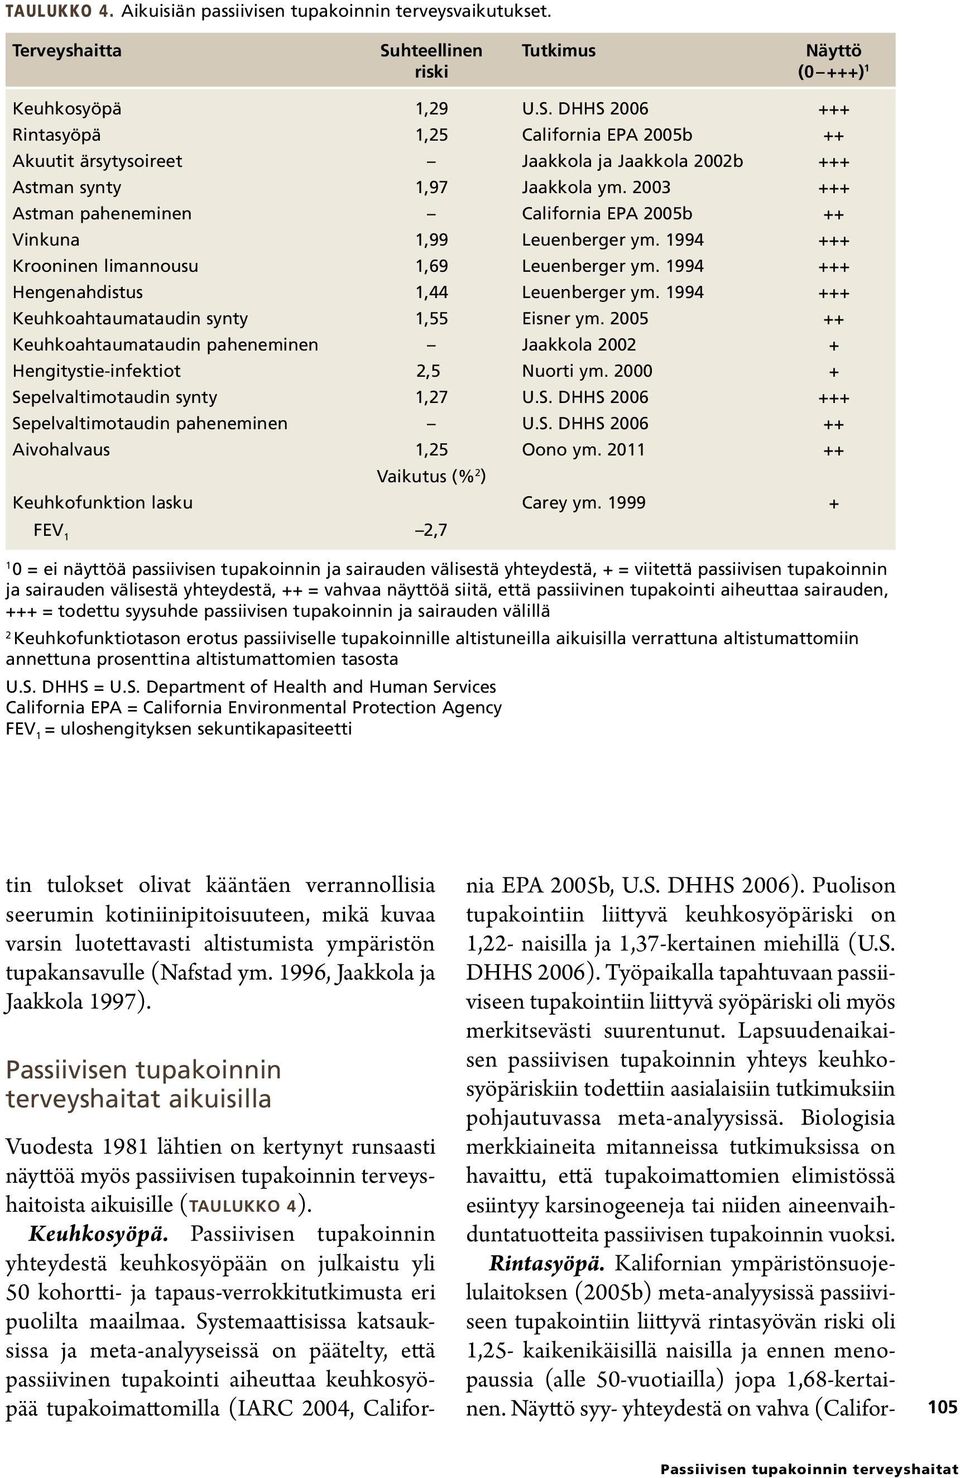 DHHS 2006 +++ Rintasyöpä 1,25 California EPA 2005b ++ Akuutit ärsytysoireet Jaakkola ja Jaakkola 2002b +++ Astman synty 1,97 Jaakkola ym.